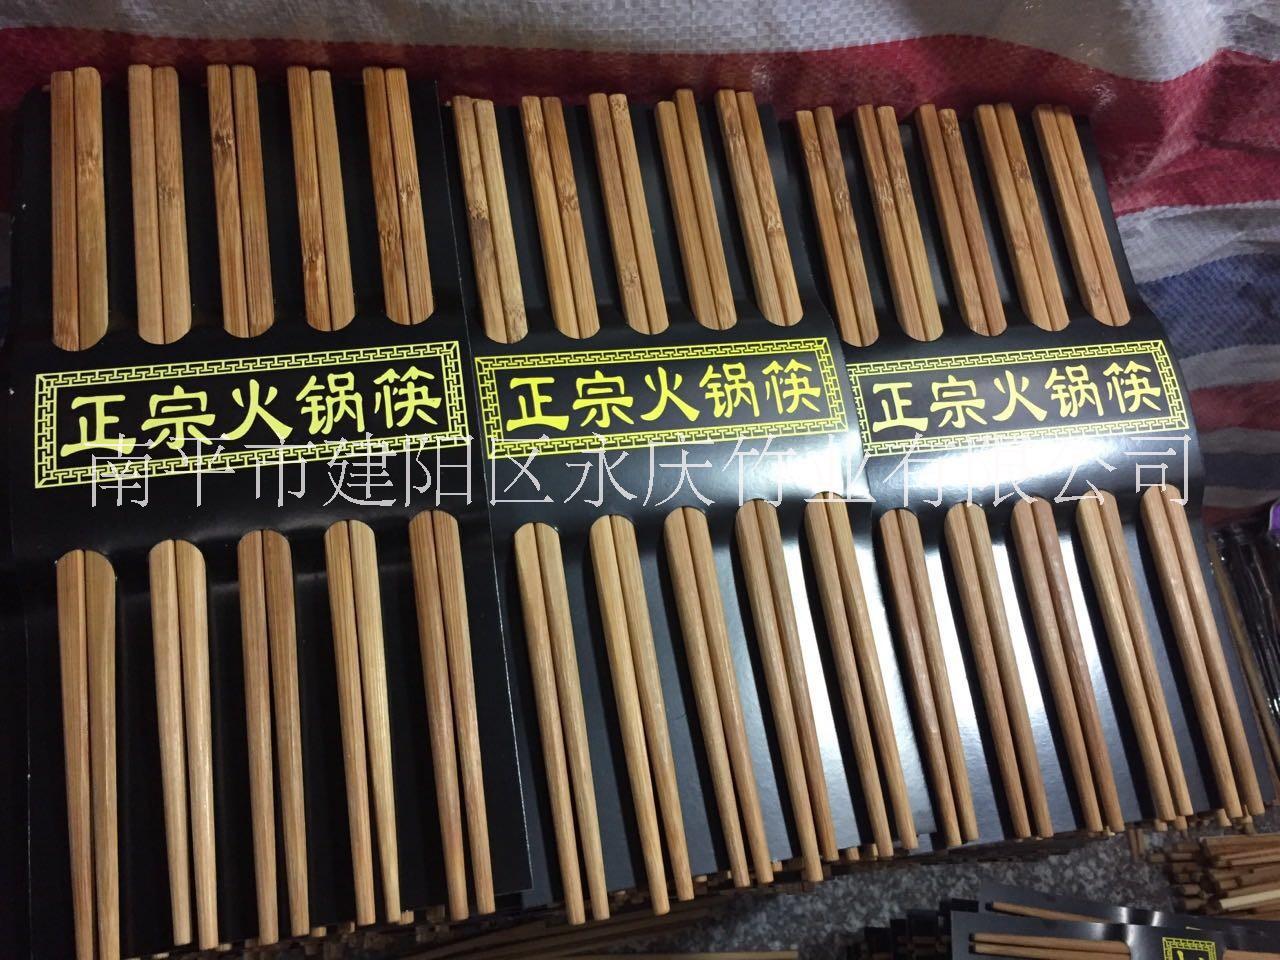 包装竹筷批发